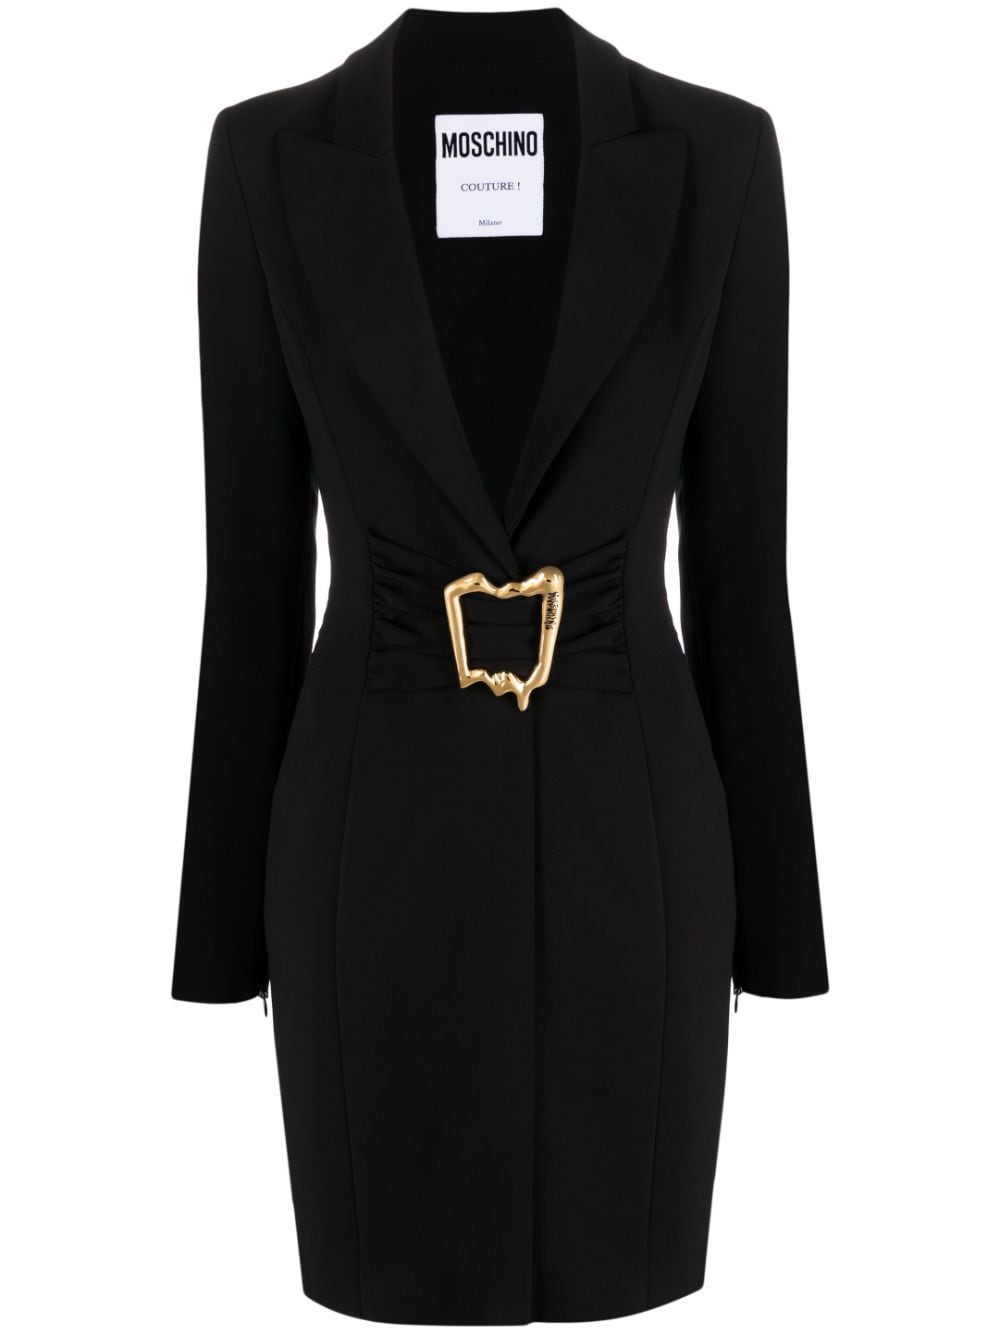 Moschino belted blazer dress - Black von Moschino